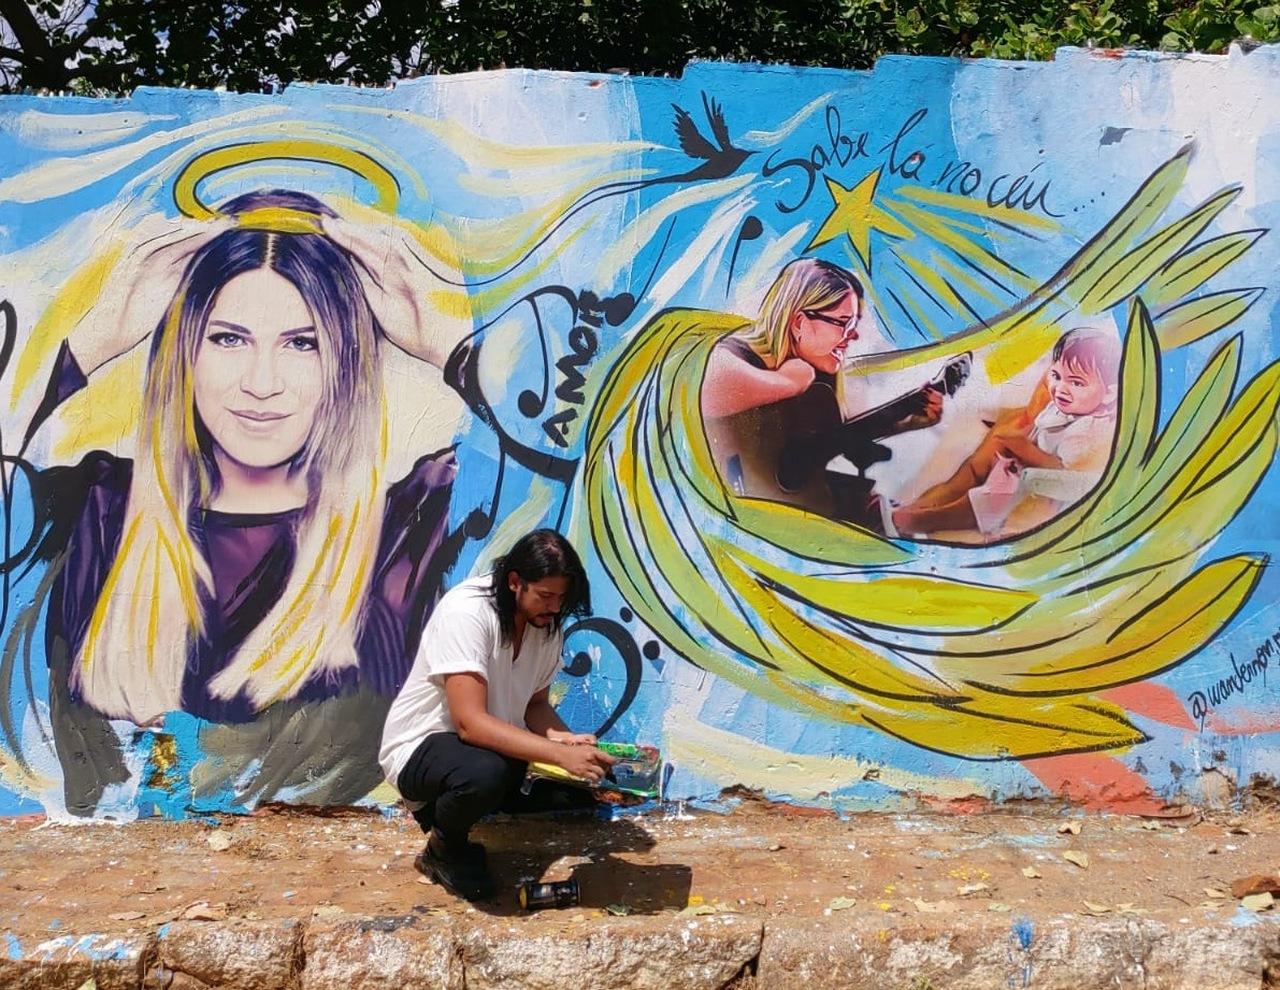 Artista pinta muro de 150 metros em homenagem aos 35 anos de